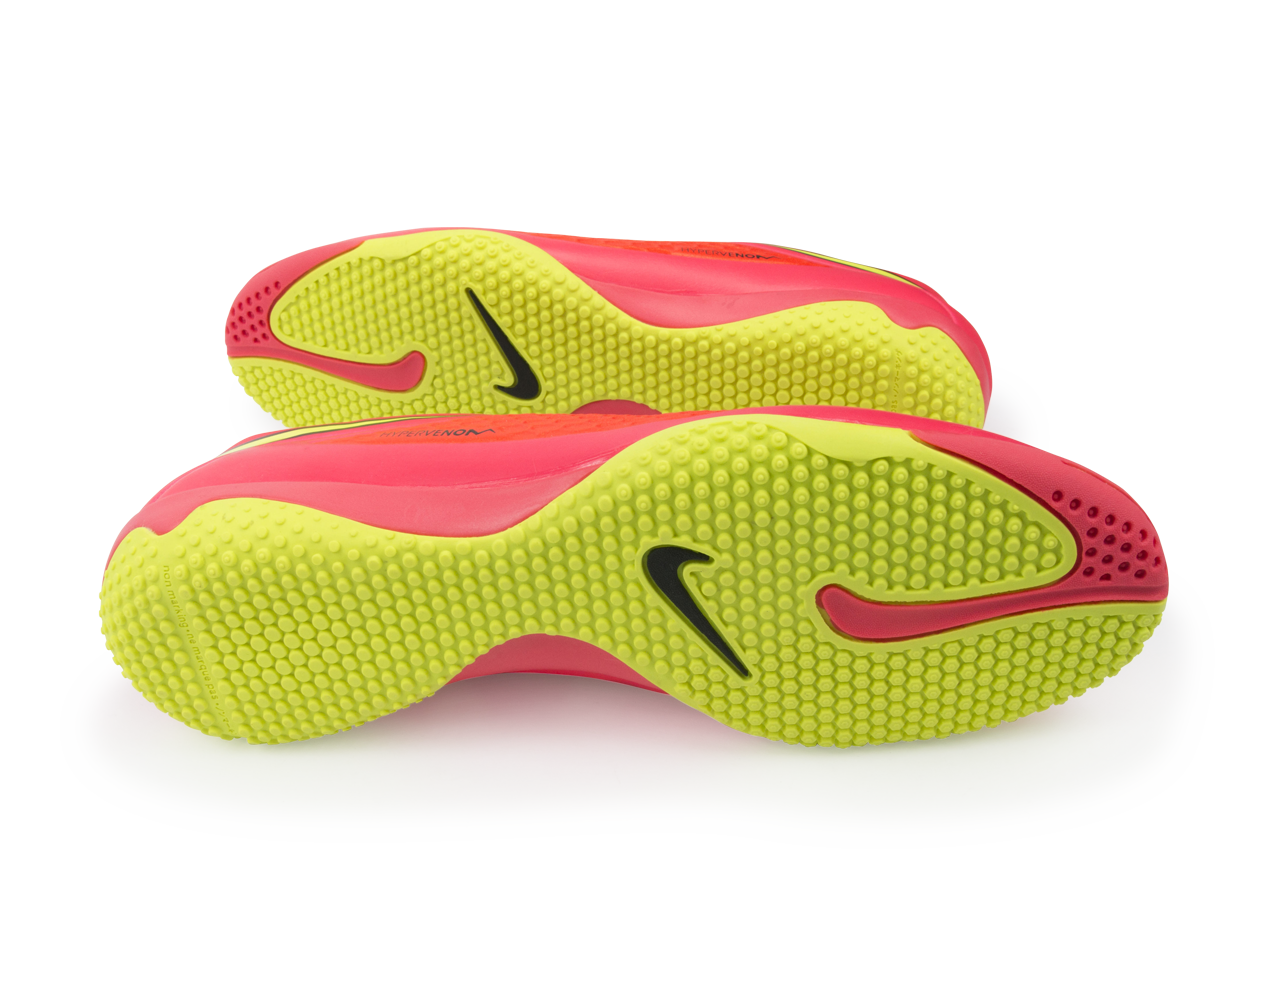 Nike Men's Hypervenom Phelon Indoor Soccer Shoes Bright Crimson/Volt/Hyper Punch